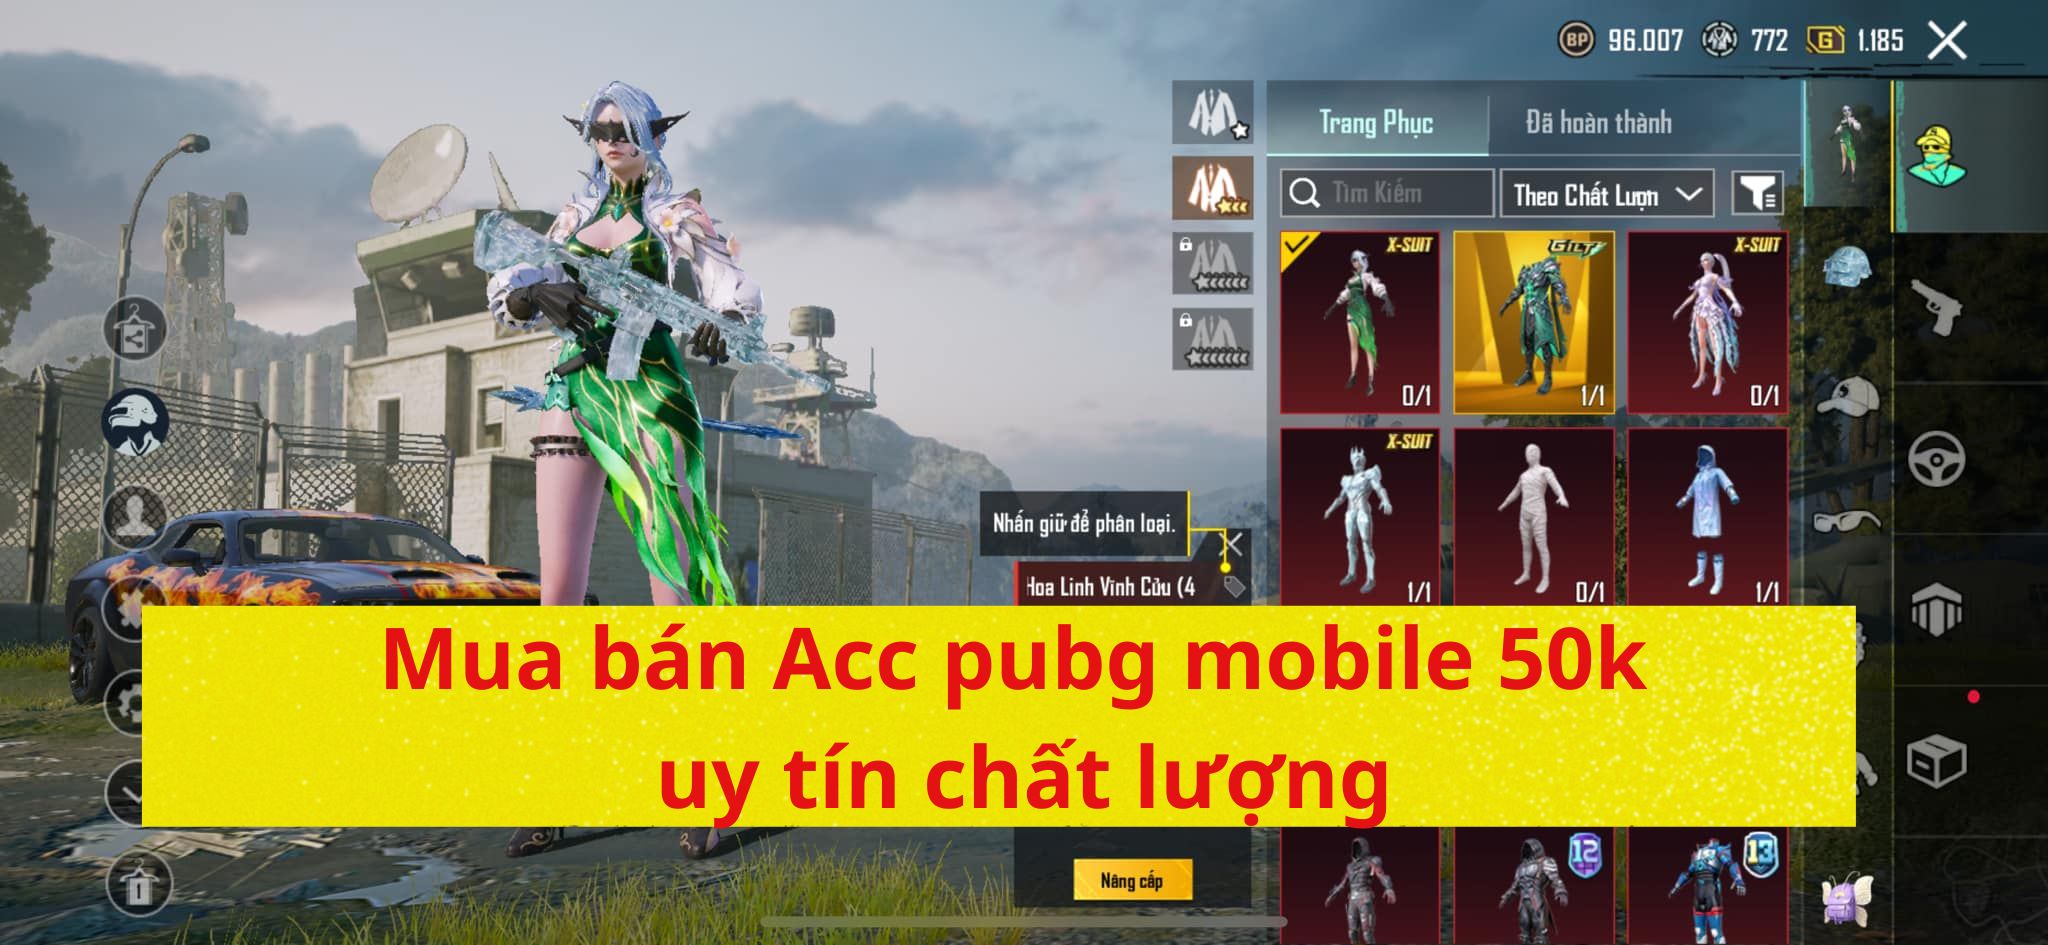 Mua bán Acc pubg mobile 50k uy tín chất lượng